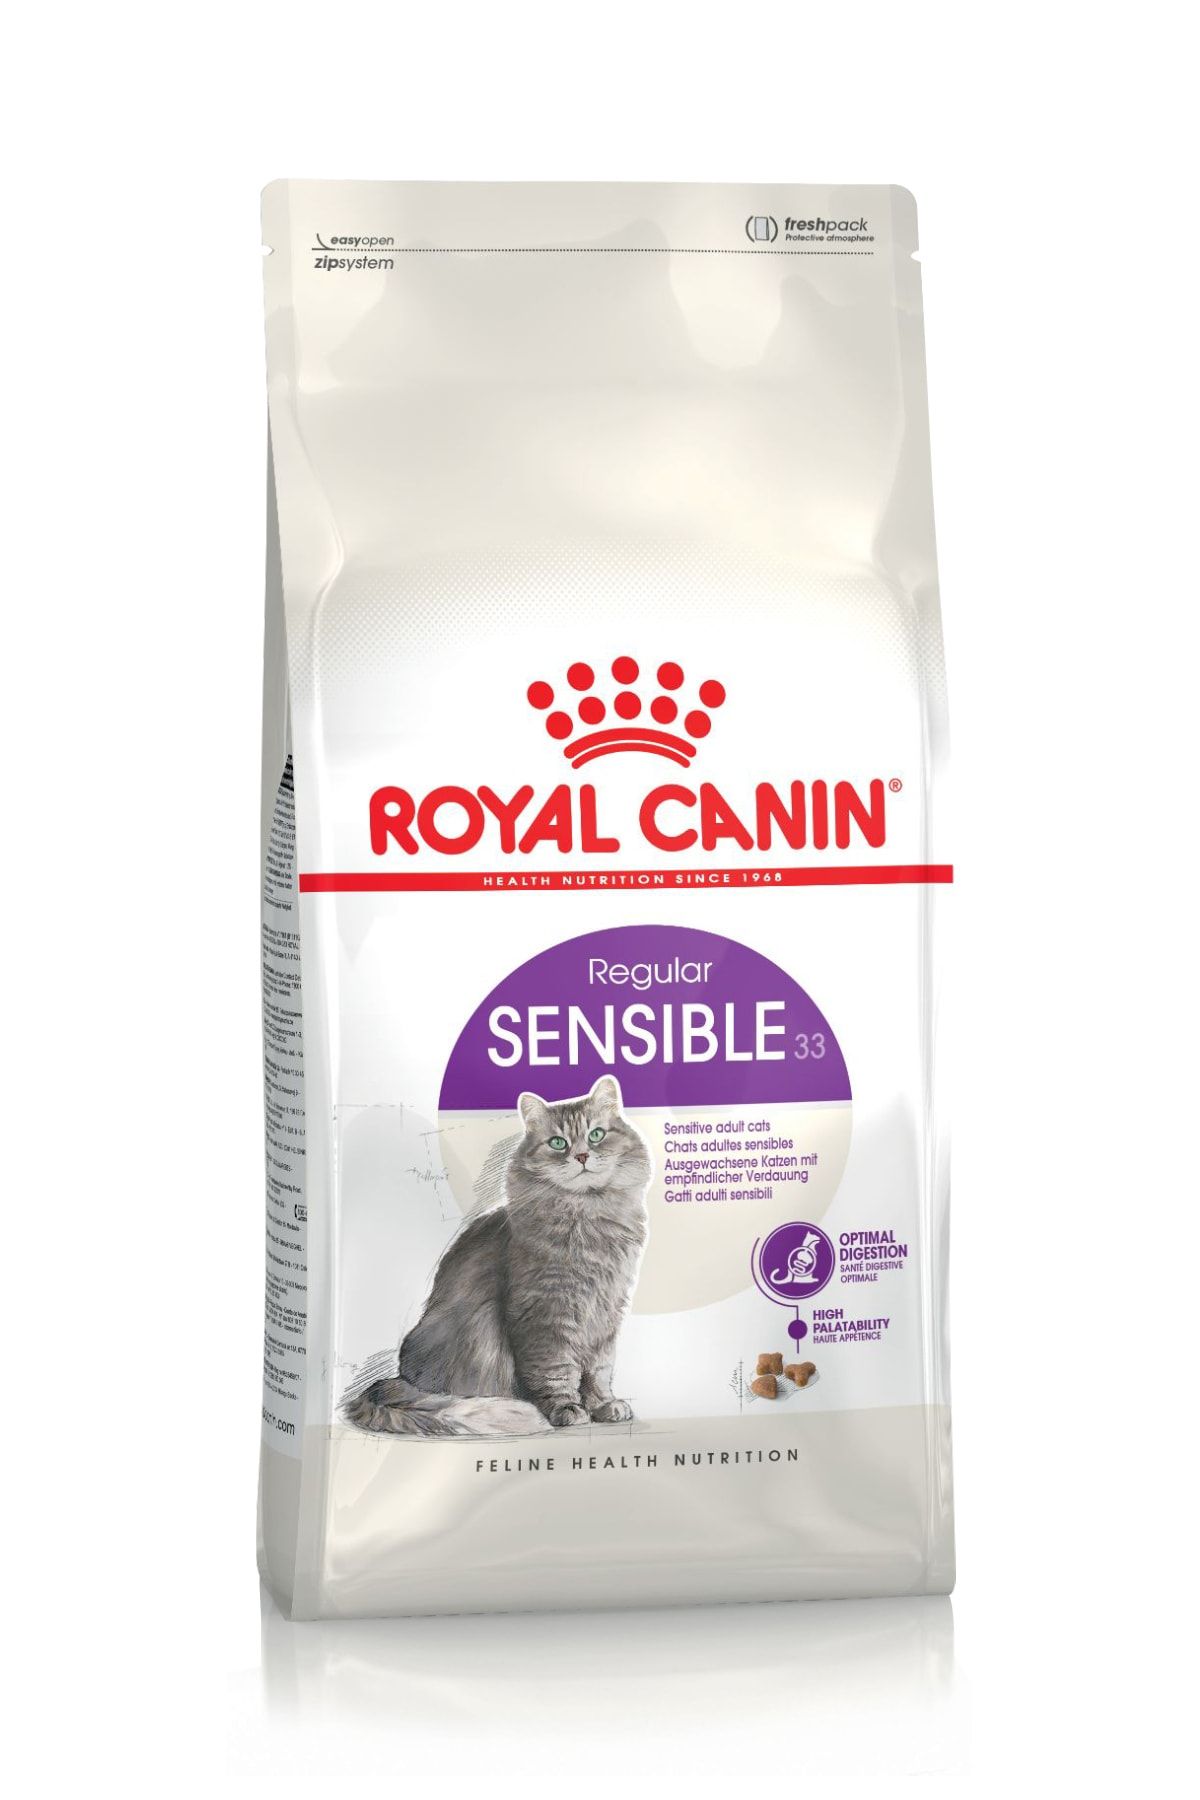 Royal Canin Sensible 33 Hassas Sindirim Sistemi Destekleyici Kedi Maması 4 Kg